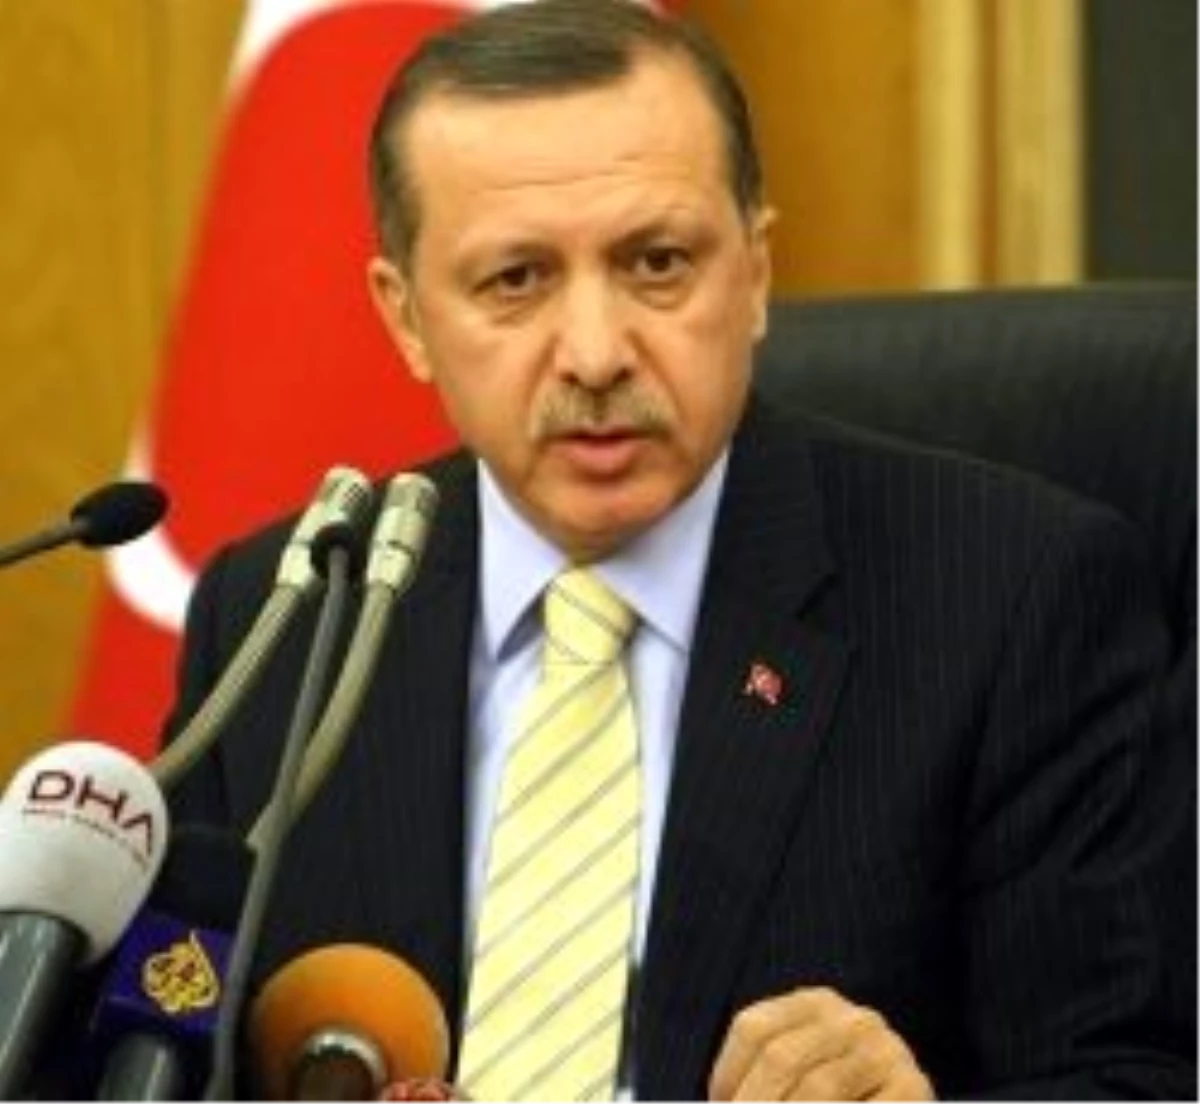 Erdoğan: Yapmam Gereken Ne İse Onu Yaptım